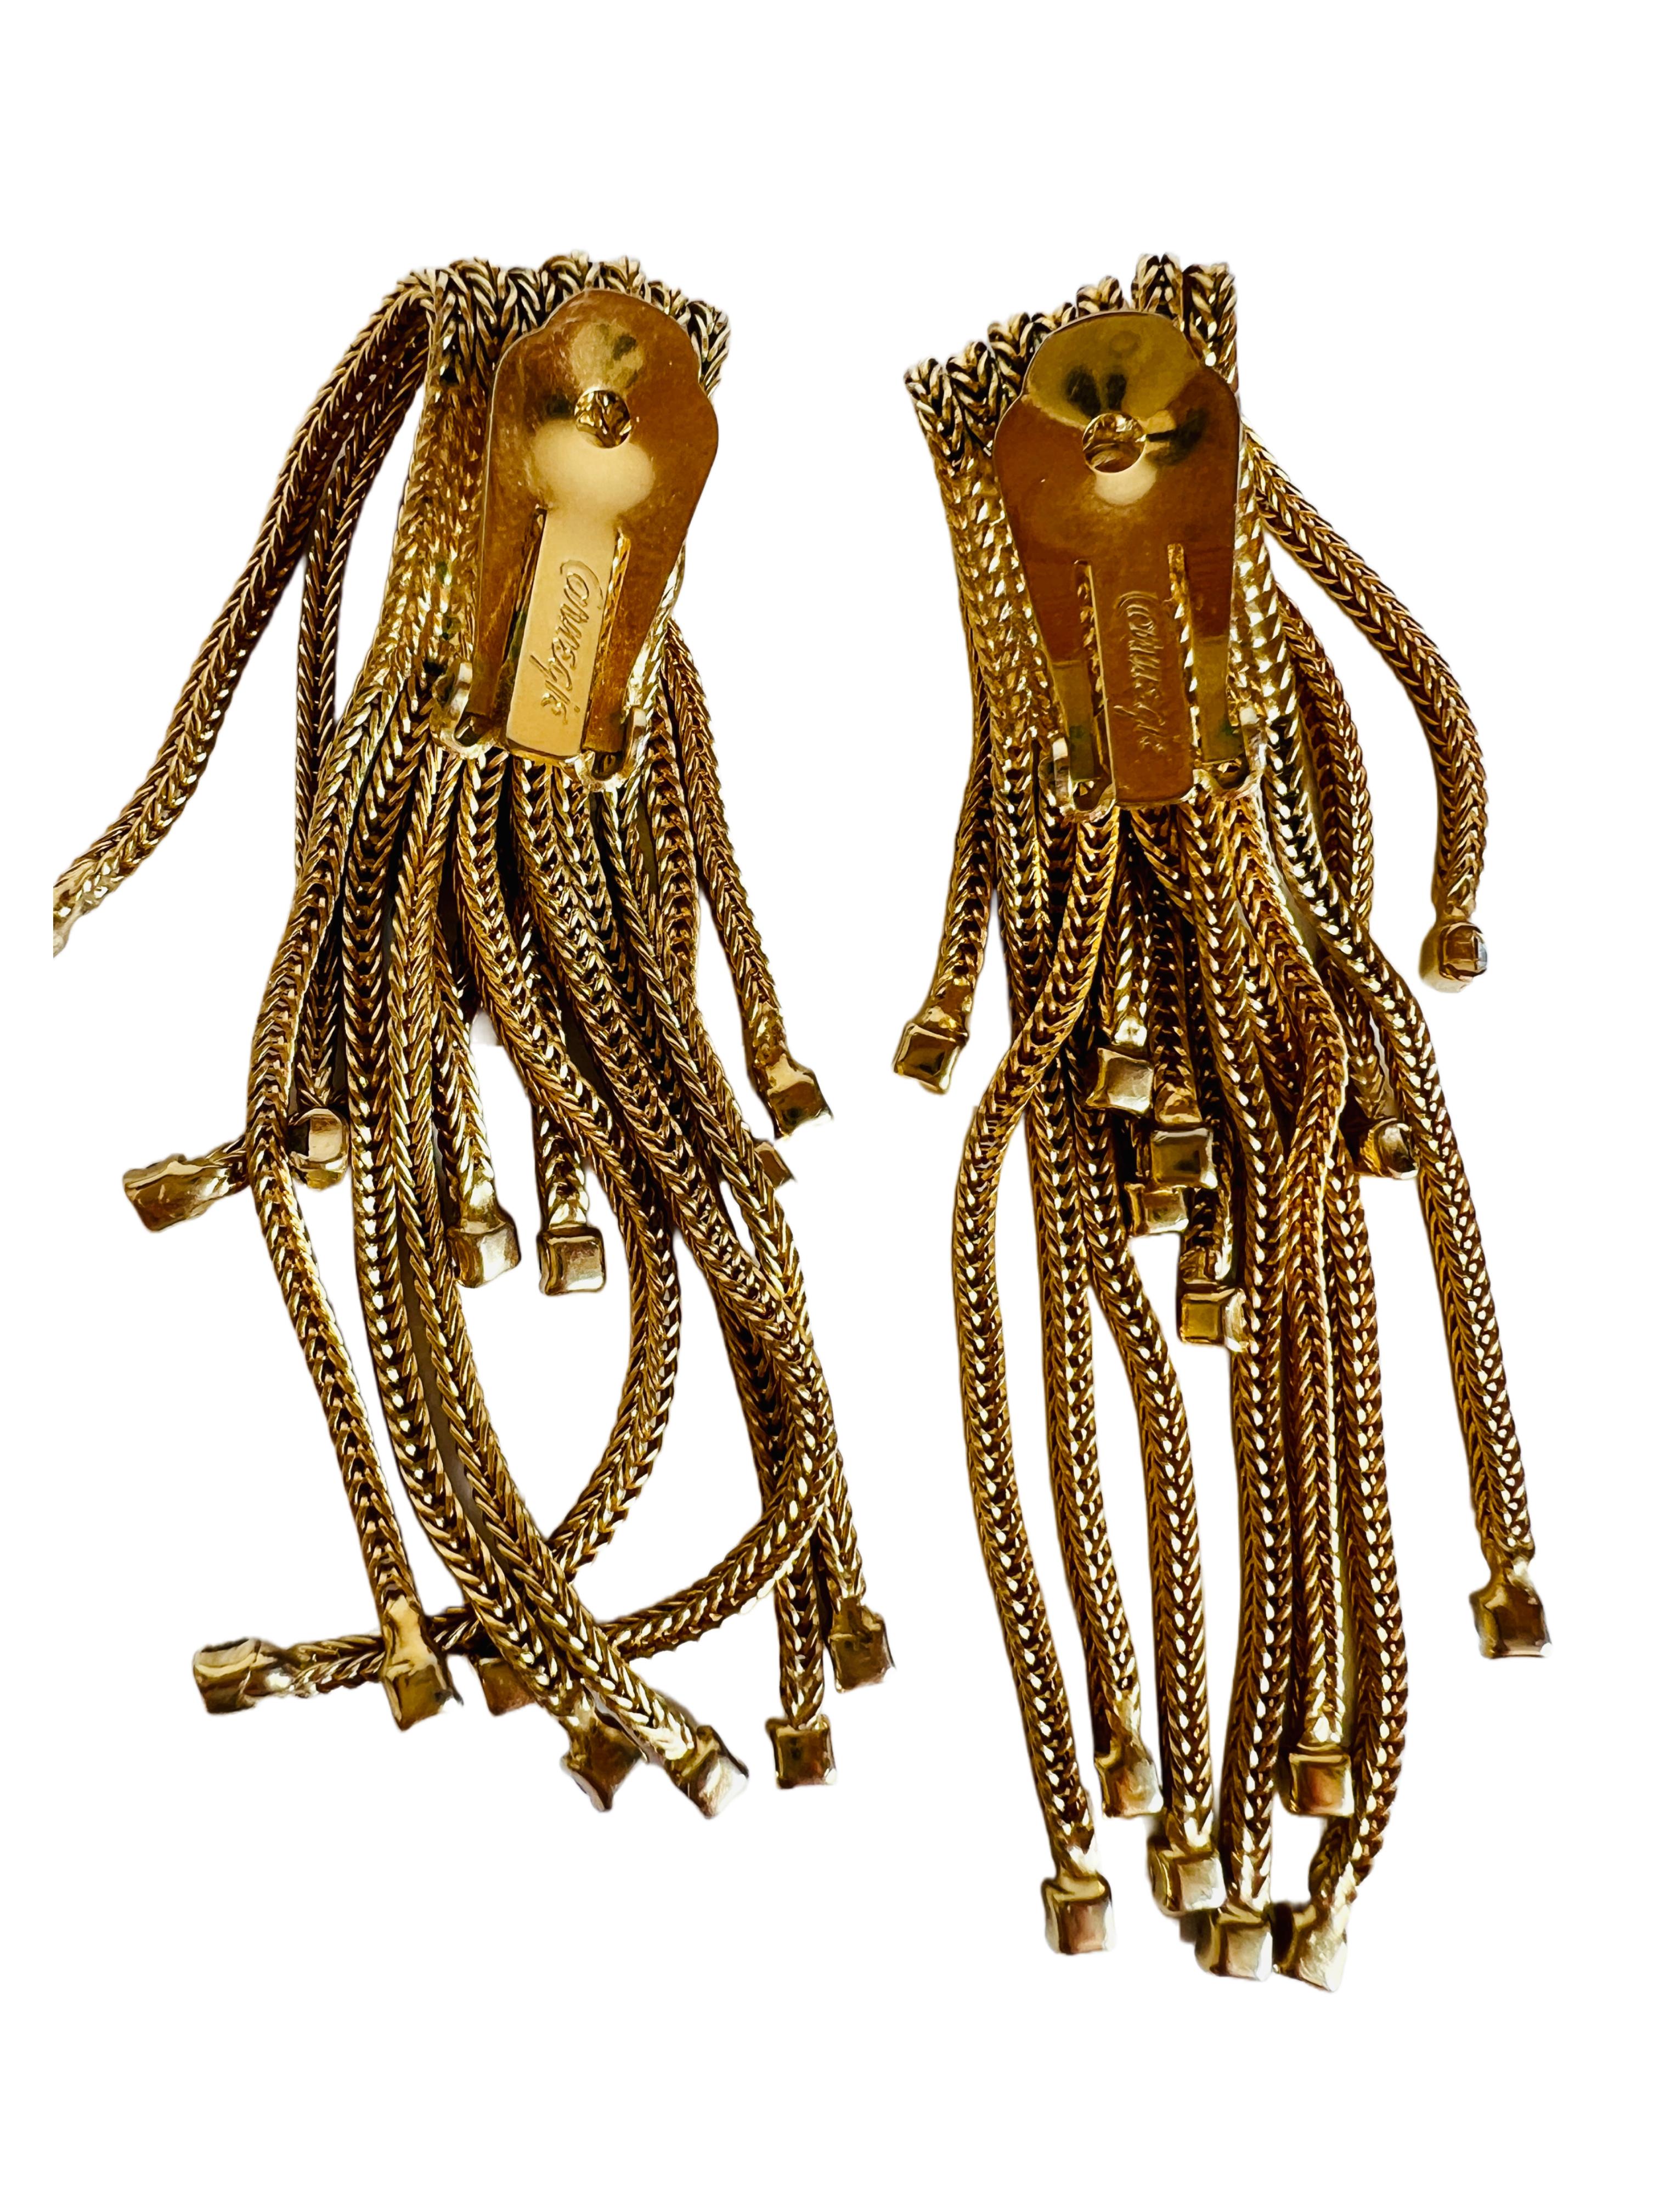 Hattie Carnegie Gold Mesh Chain Waterfall Tassel Choker Necklace Earrings Set For Sale 1